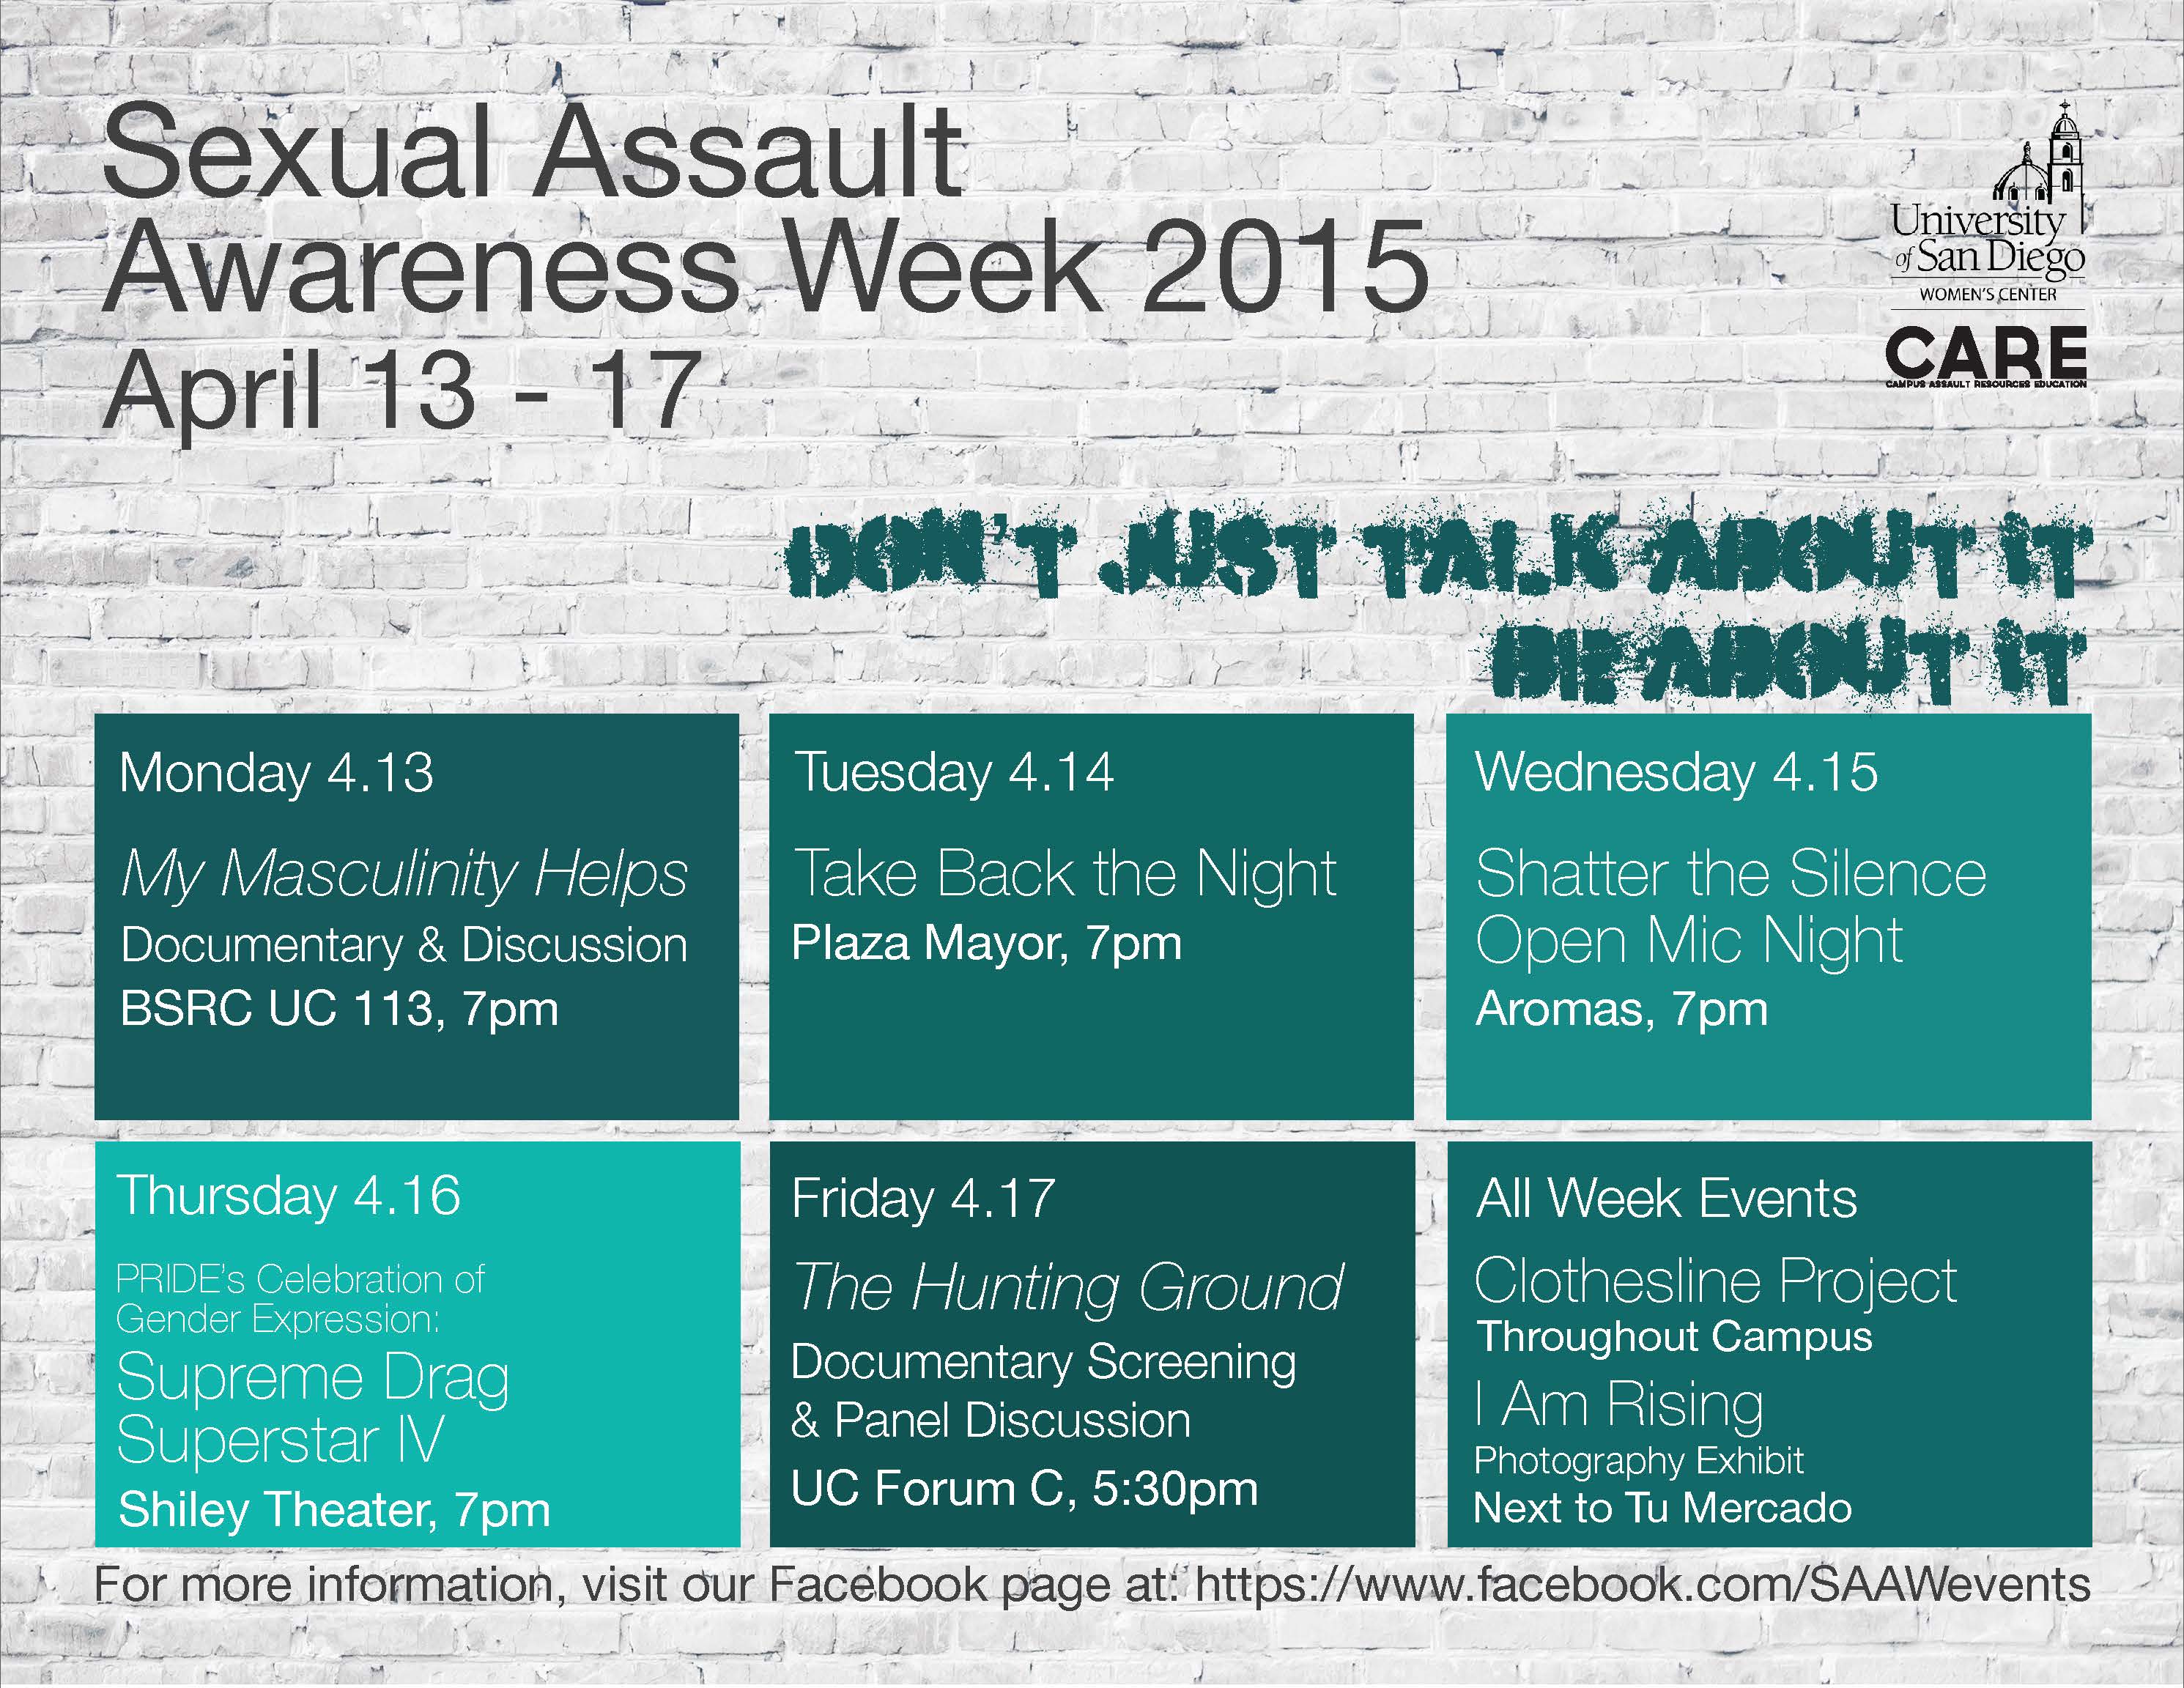 Sexual Assault Awareness Week 2015 is April 13 to 17